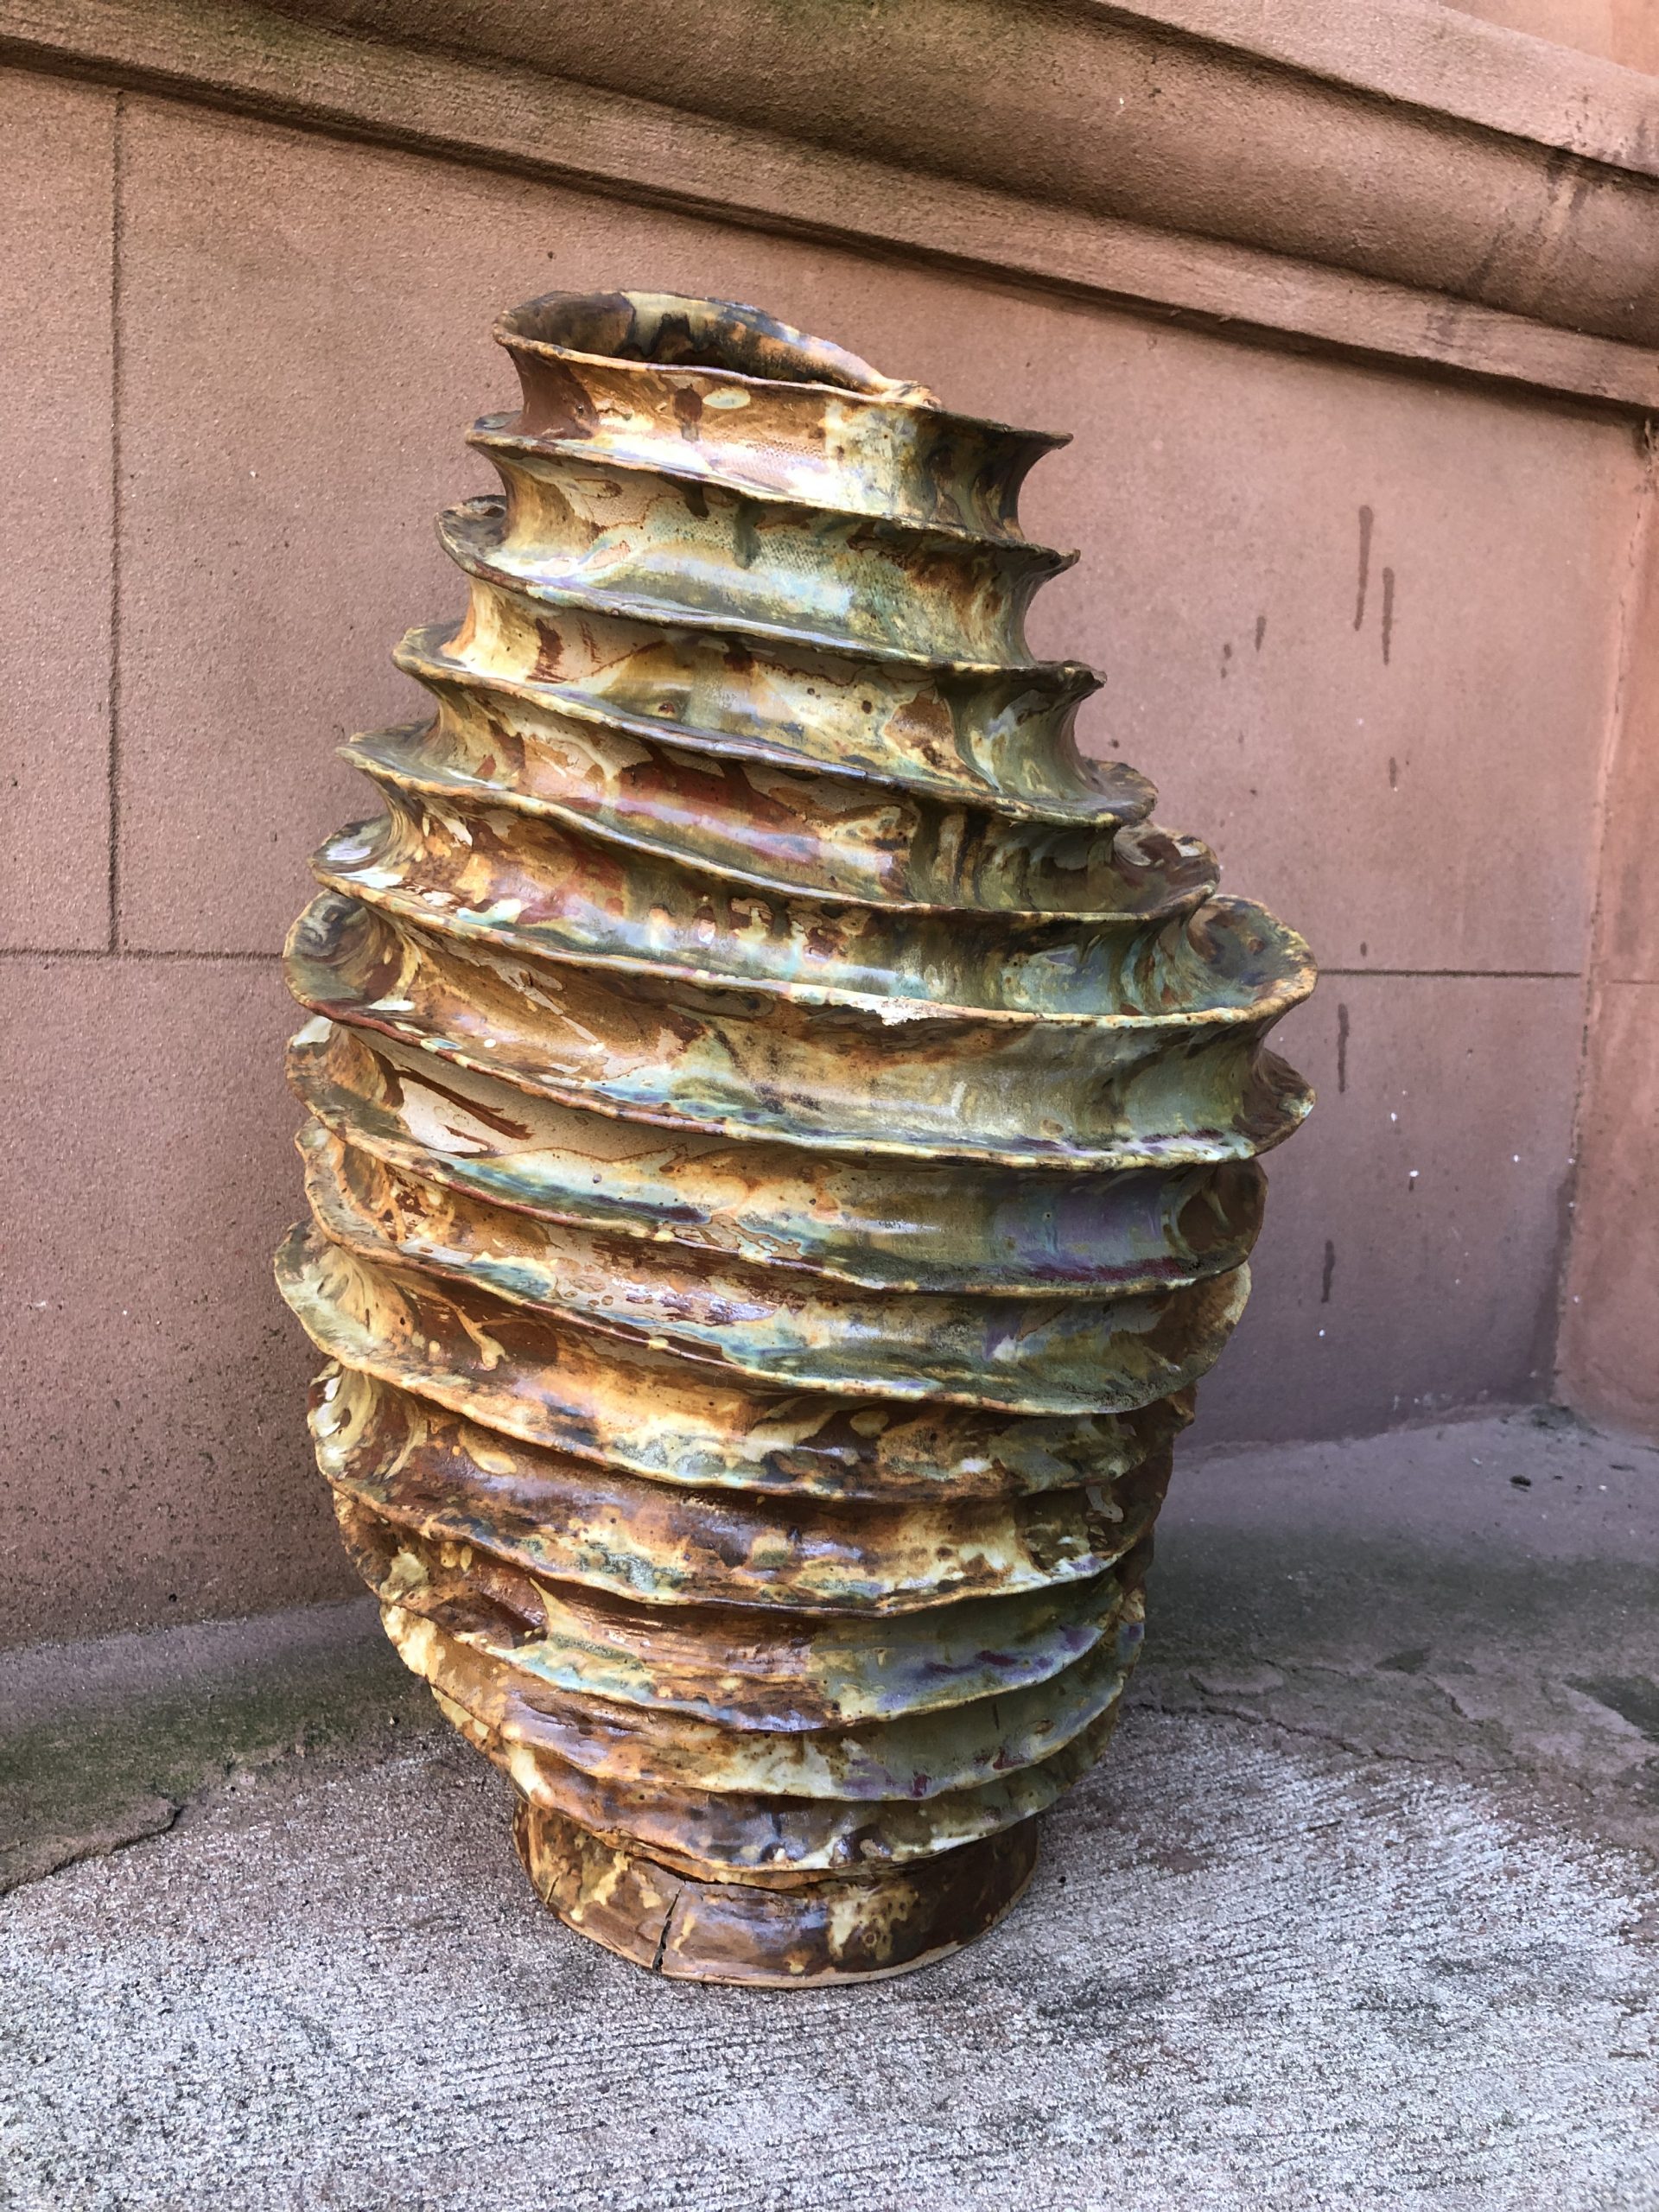 Spiral hand built stoneware vase by Reuben Sinha